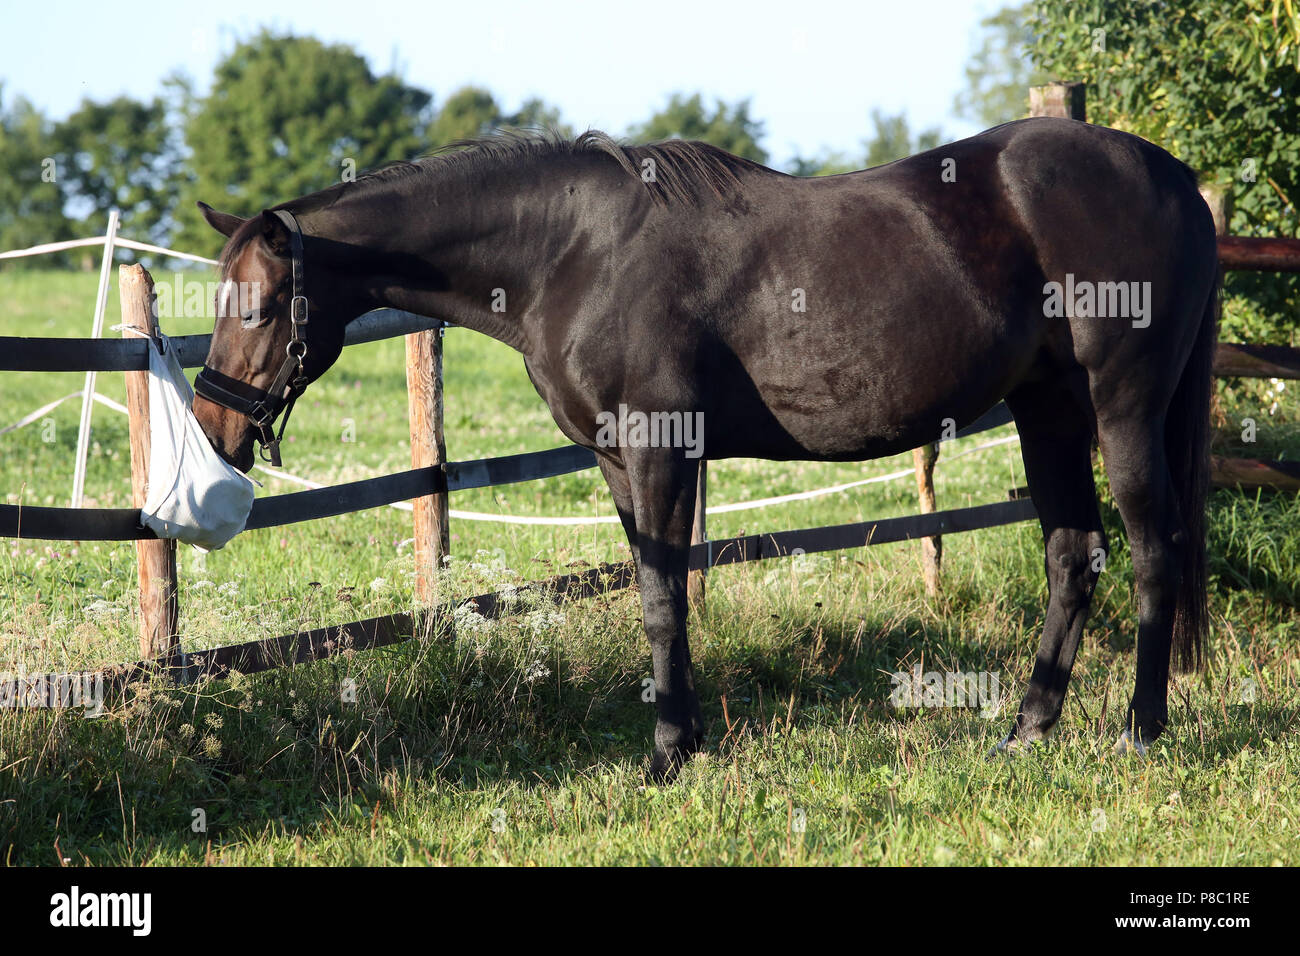 Gestuet Westerberg, cheval renifle curieusement sur le pâturage sur un sac de nettoyage Banque D'Images